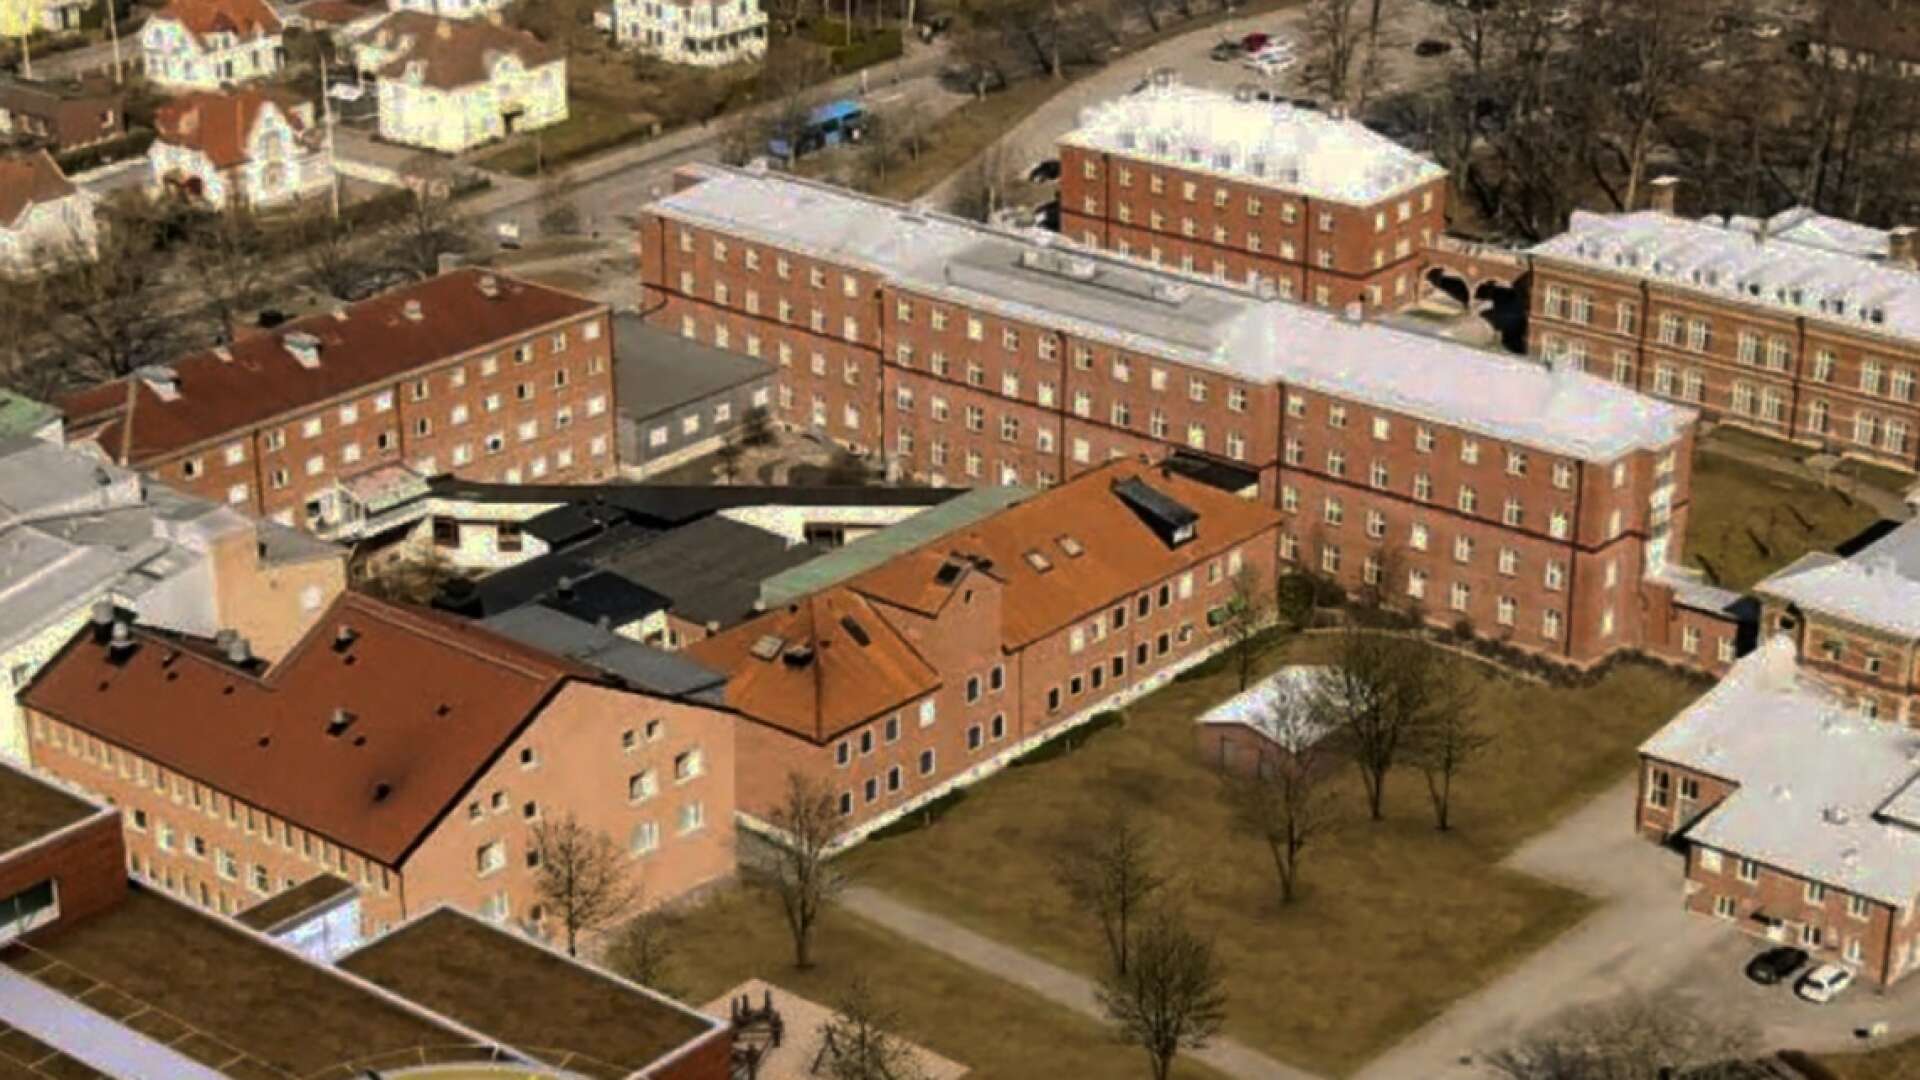 Västfastigheter har tagit fram en visionsskiss över sjukhusområdet i Lidköping där det nederst till vänster har lagts in en helt ny byggnad med helikopterplatta på taket. Om det här blir verklighet är dock ovisst.